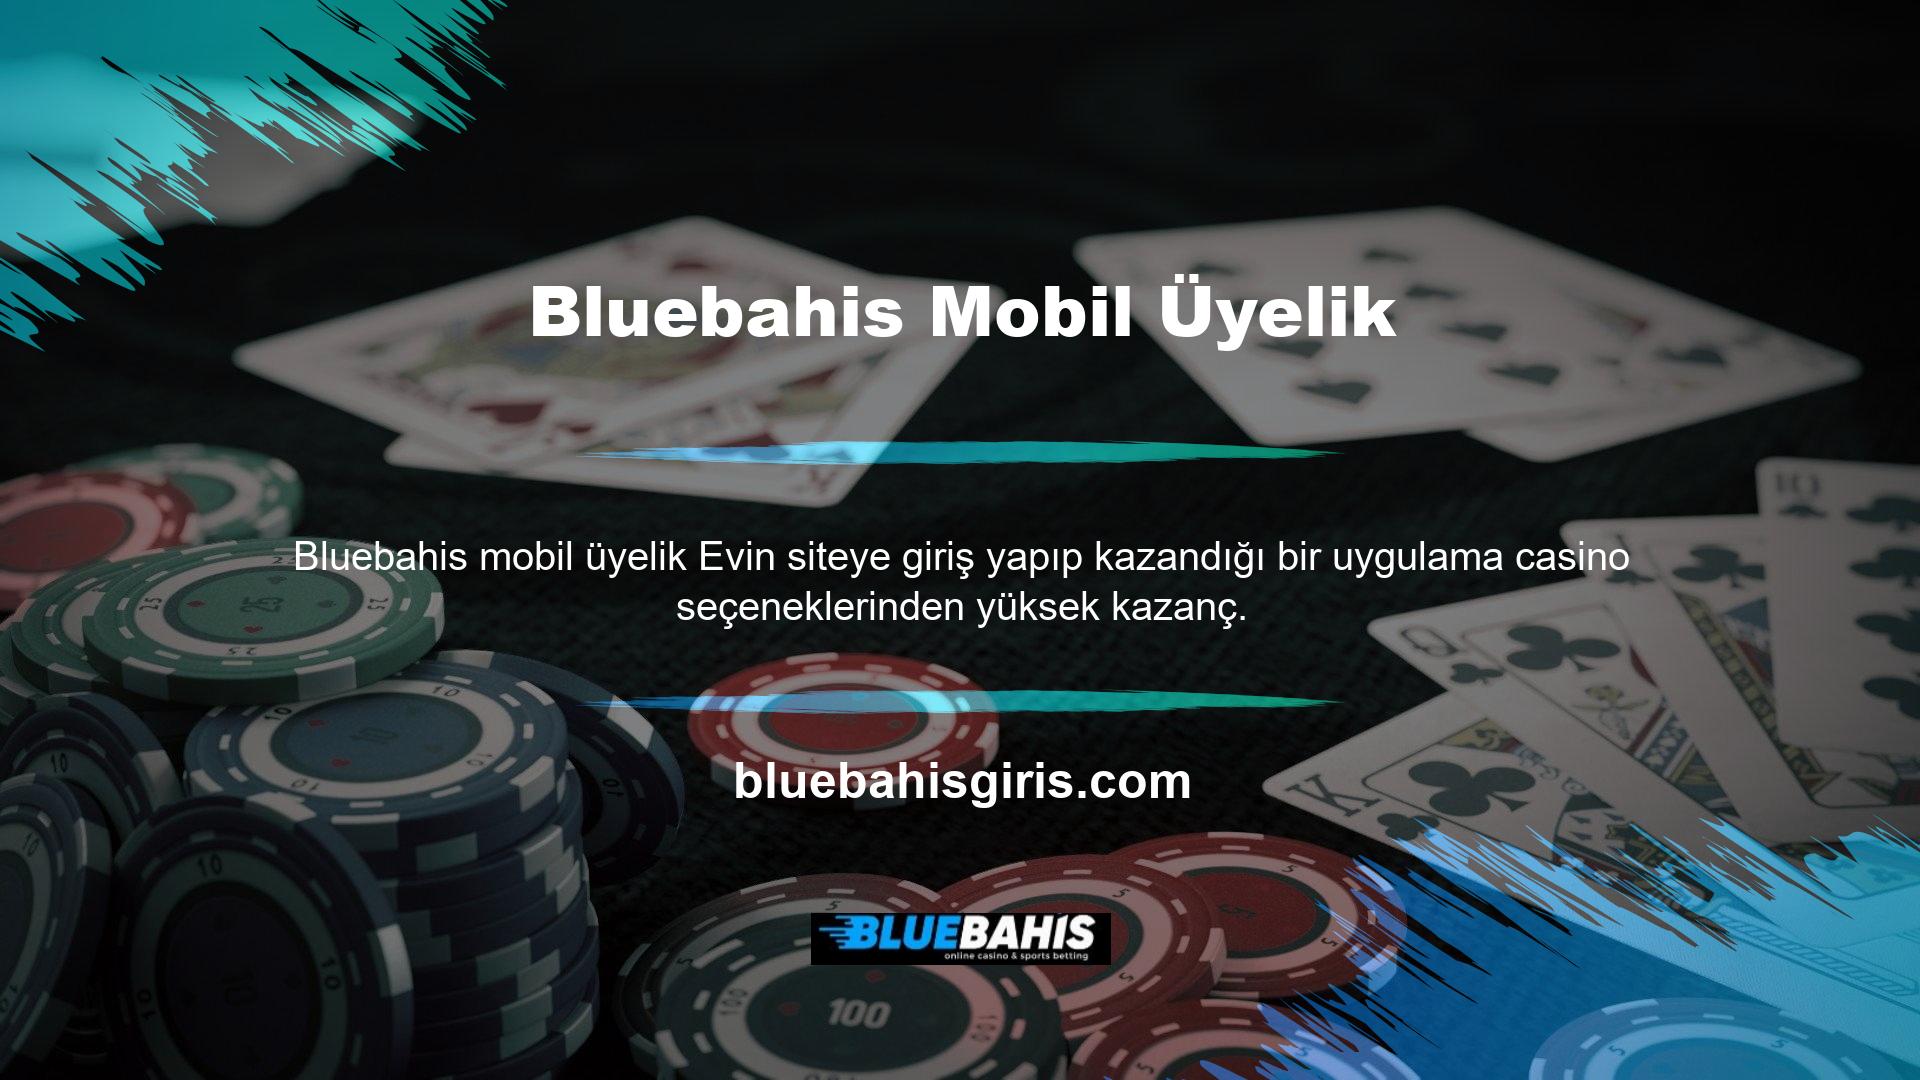 Bluebahis siteleri, mobil uygulamalar aracılığıyla kayıtlı oyunculara yüksek casino bonusları sunmaktadır